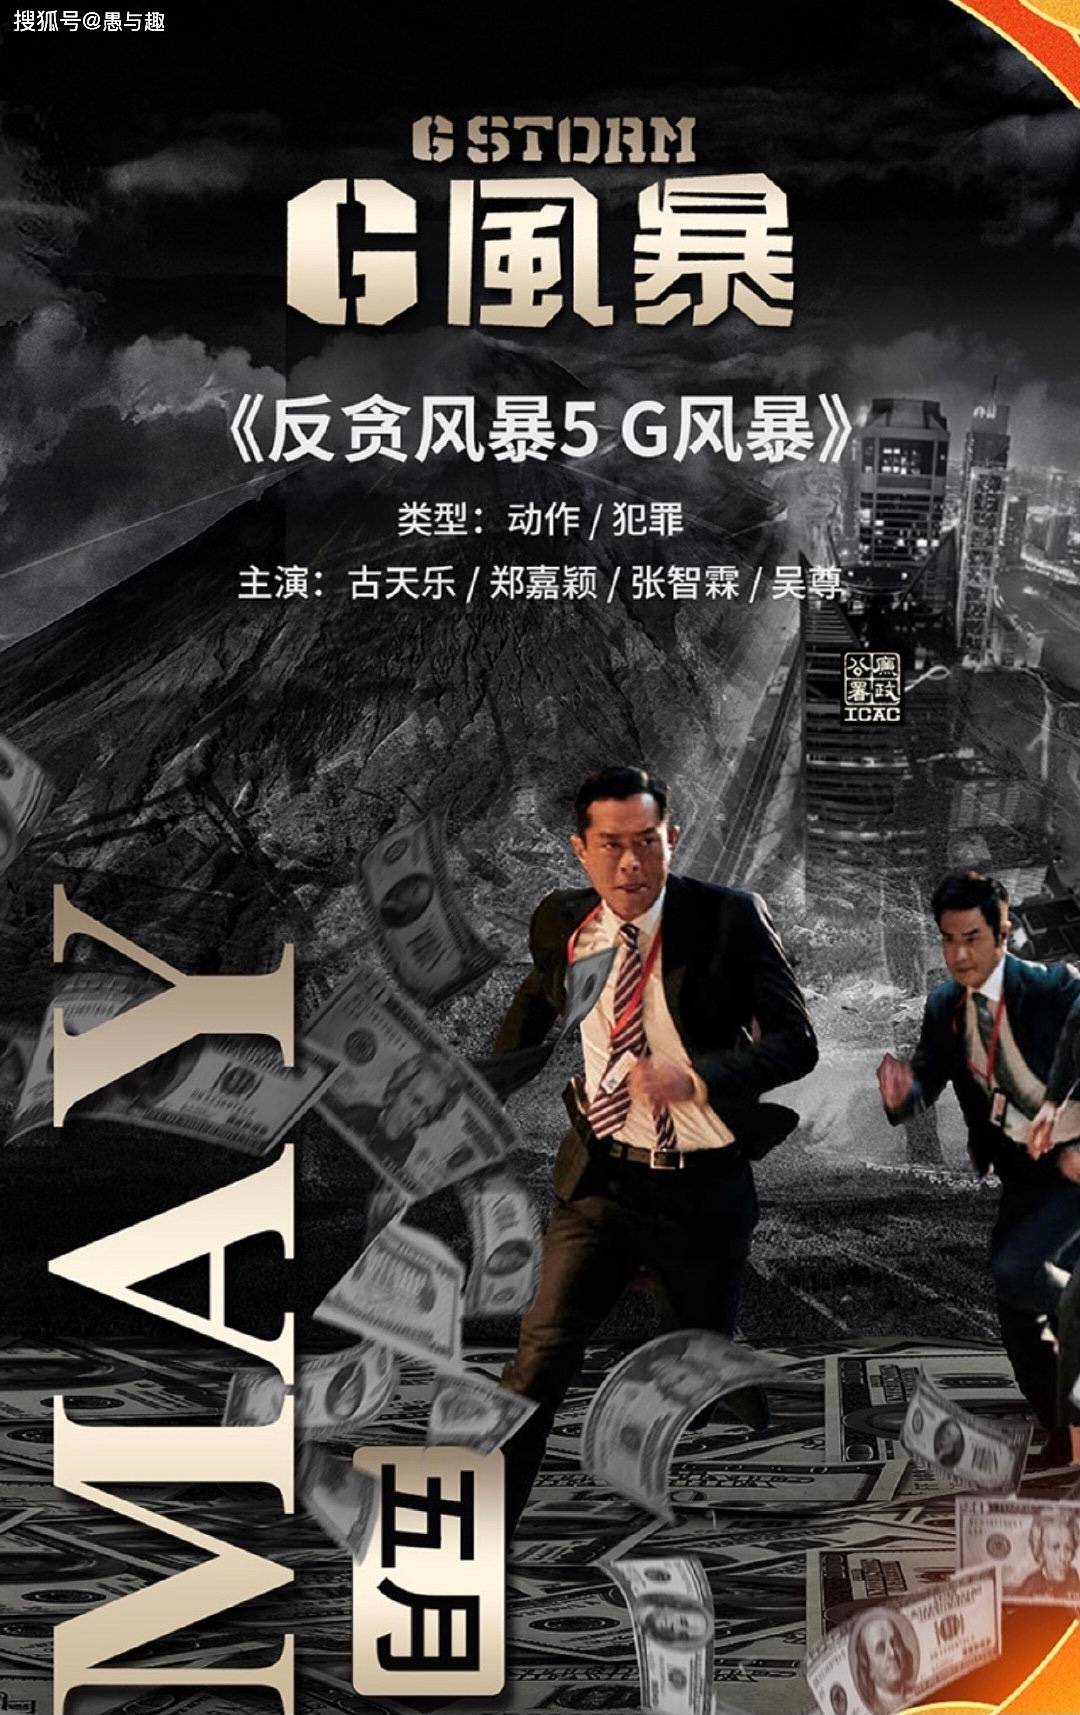 2021年华语电影,香港影坛将回归巅峰时刻,古天乐也有5部电影今年上映